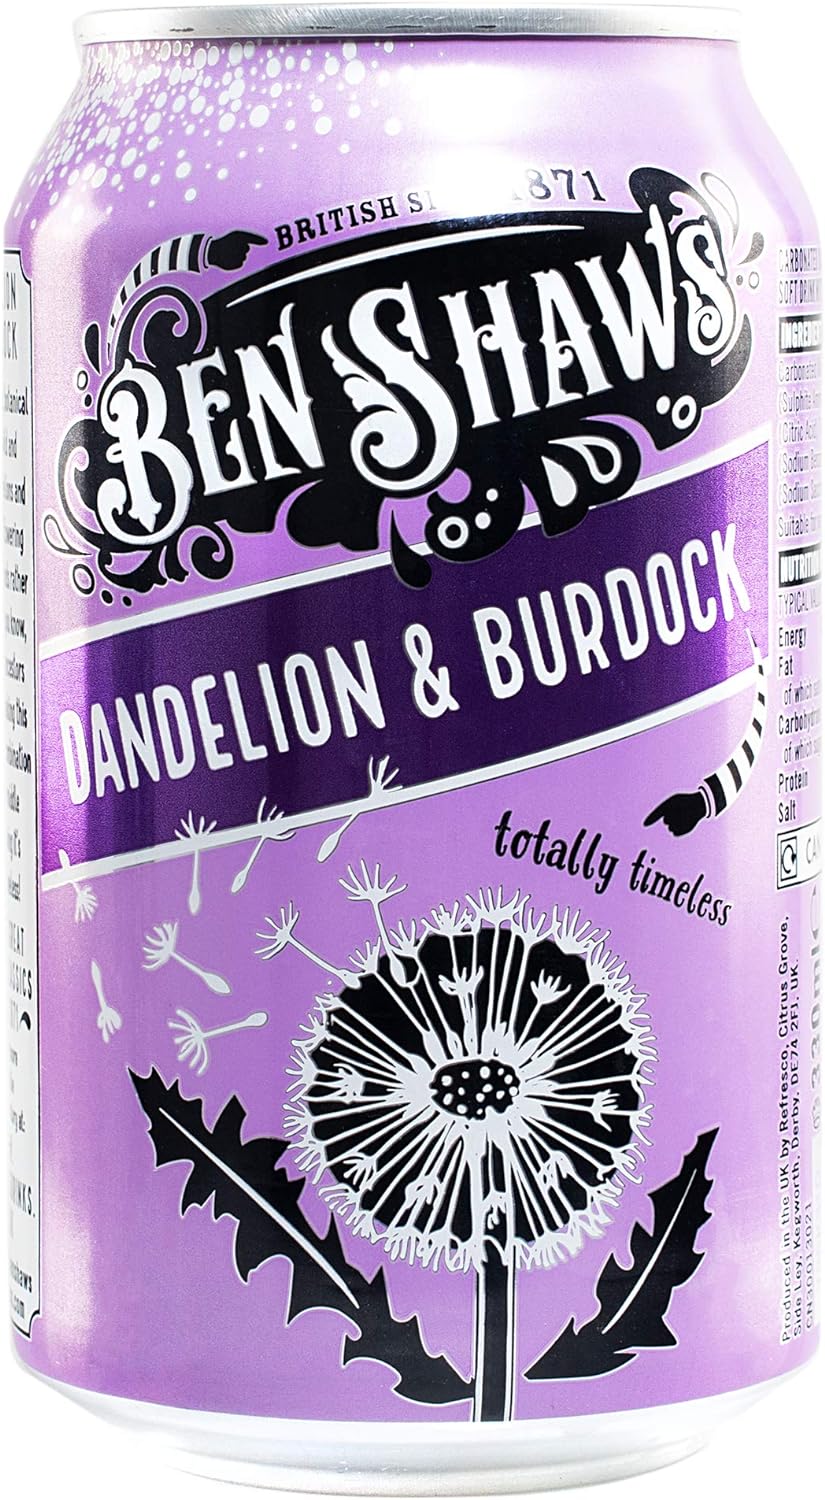 Ben Shaw's Dandelion & Burdock 330ml